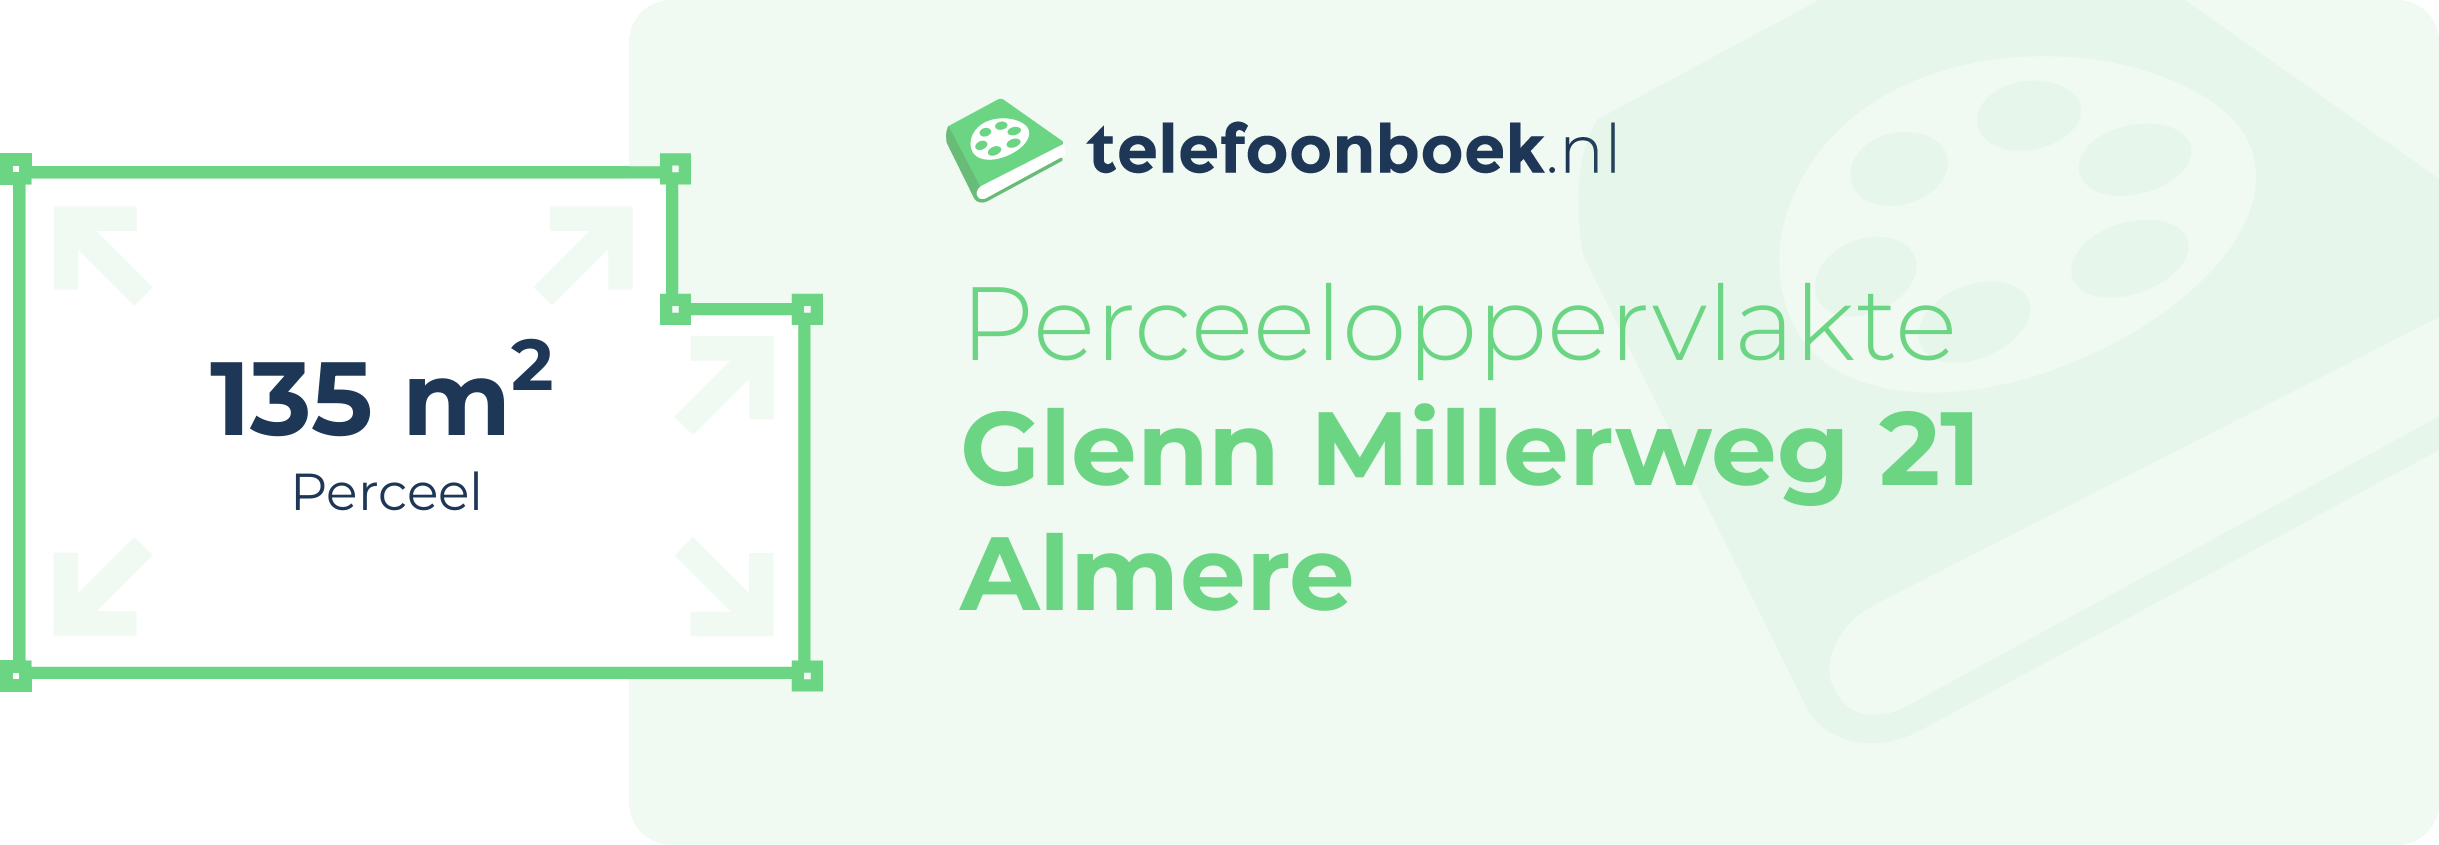 Perceeloppervlakte Glenn Millerweg 21 Almere